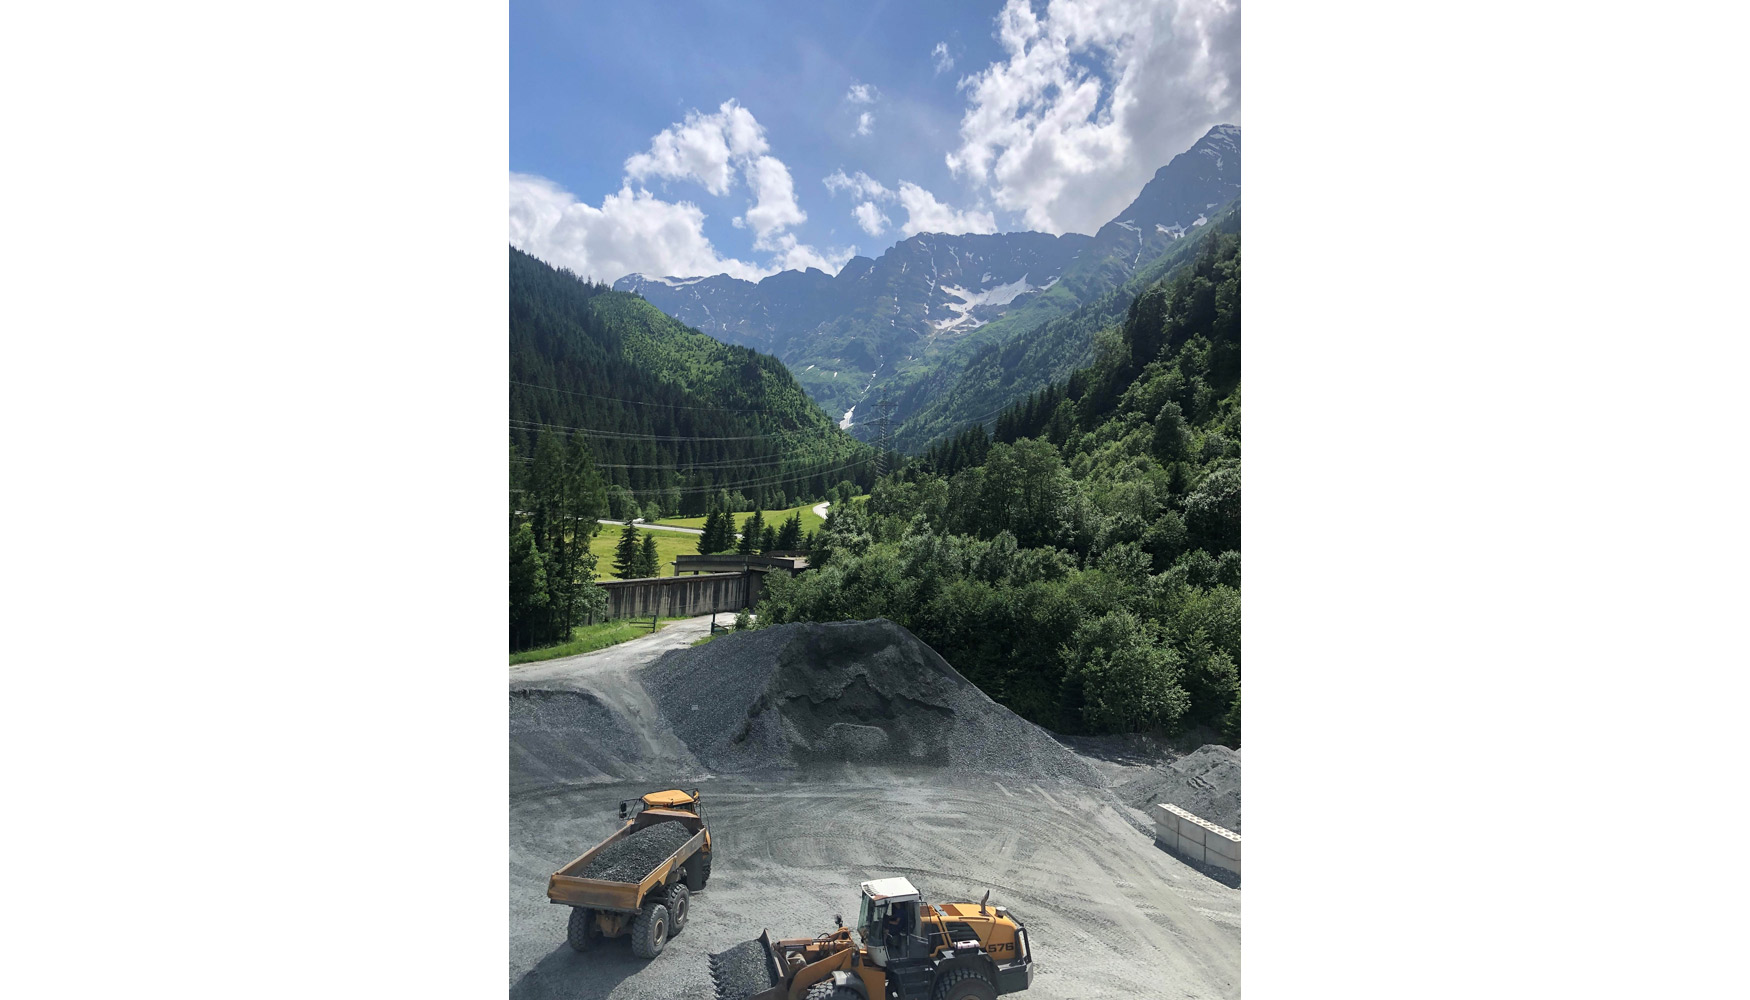 Vista area de la mina de Tungsteno de Wolfram en Mittersill, Austria, donde Tomra ha instalado dos clasificadoras COM Tertiary XRT...